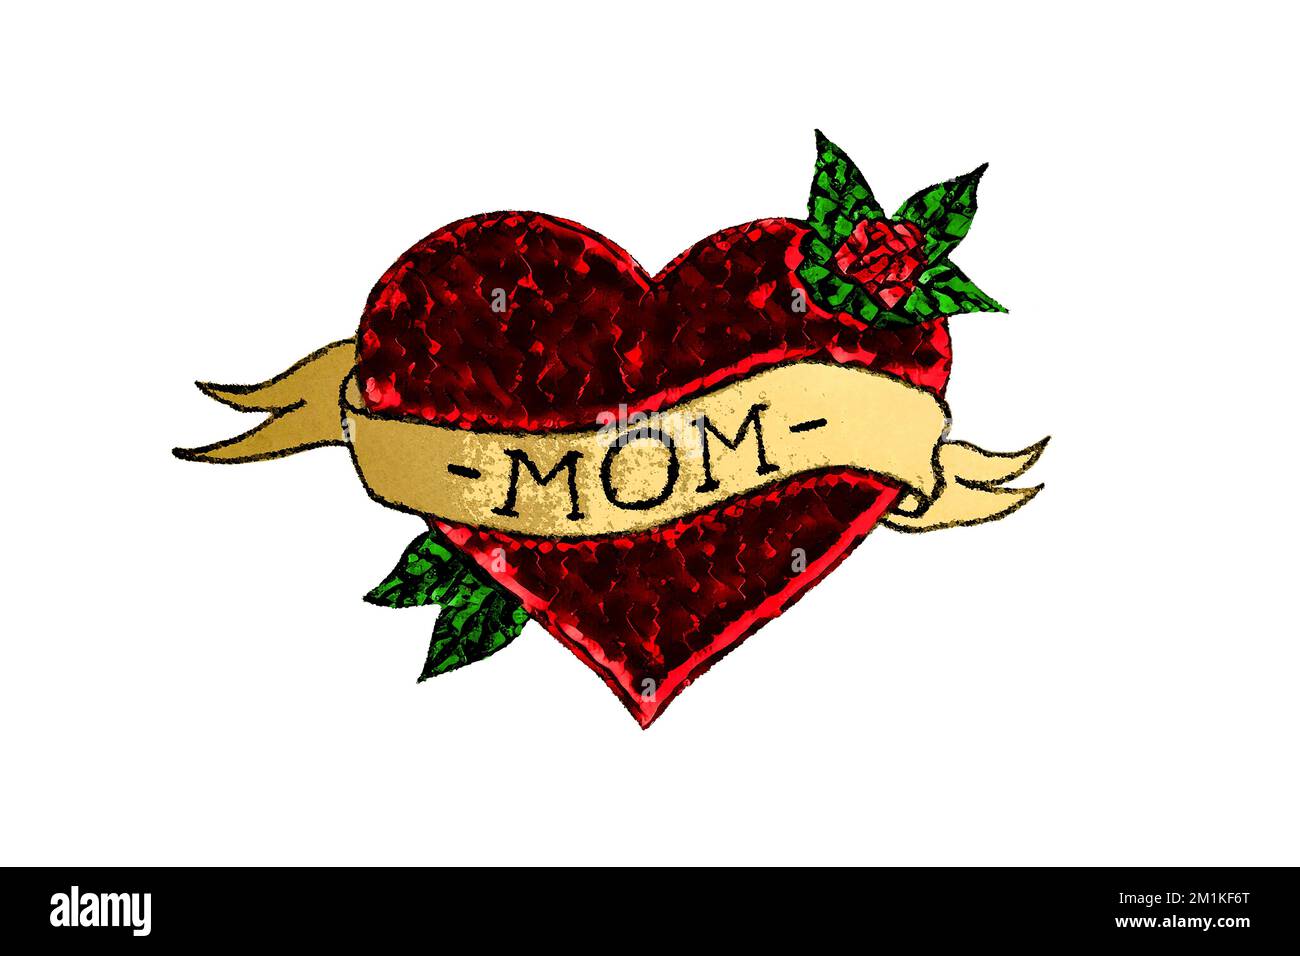 Mommy is my one true love letras cita de mamá para tarjeta de